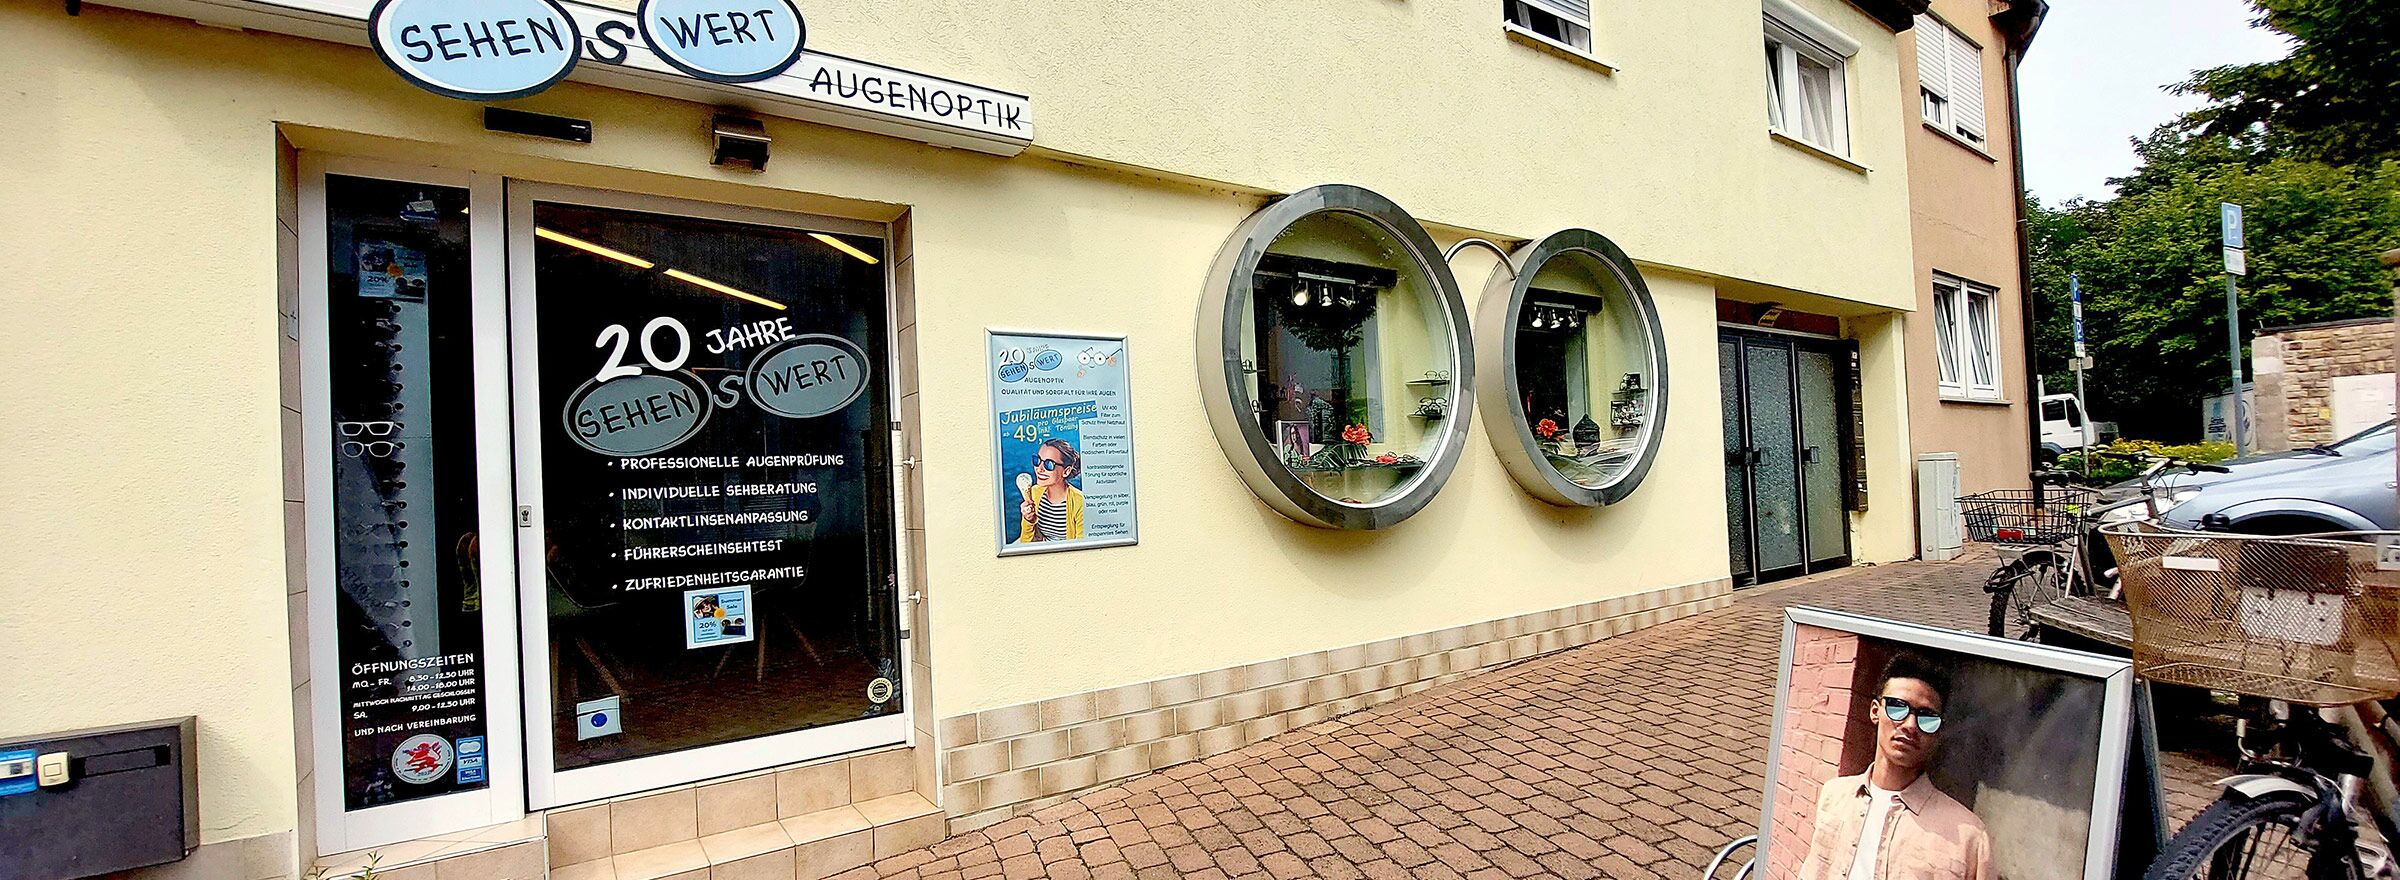 Sehenswert Augenoptik in Dieburg ...seit über 20 Jahren Ihr zuverlässiger Optiker